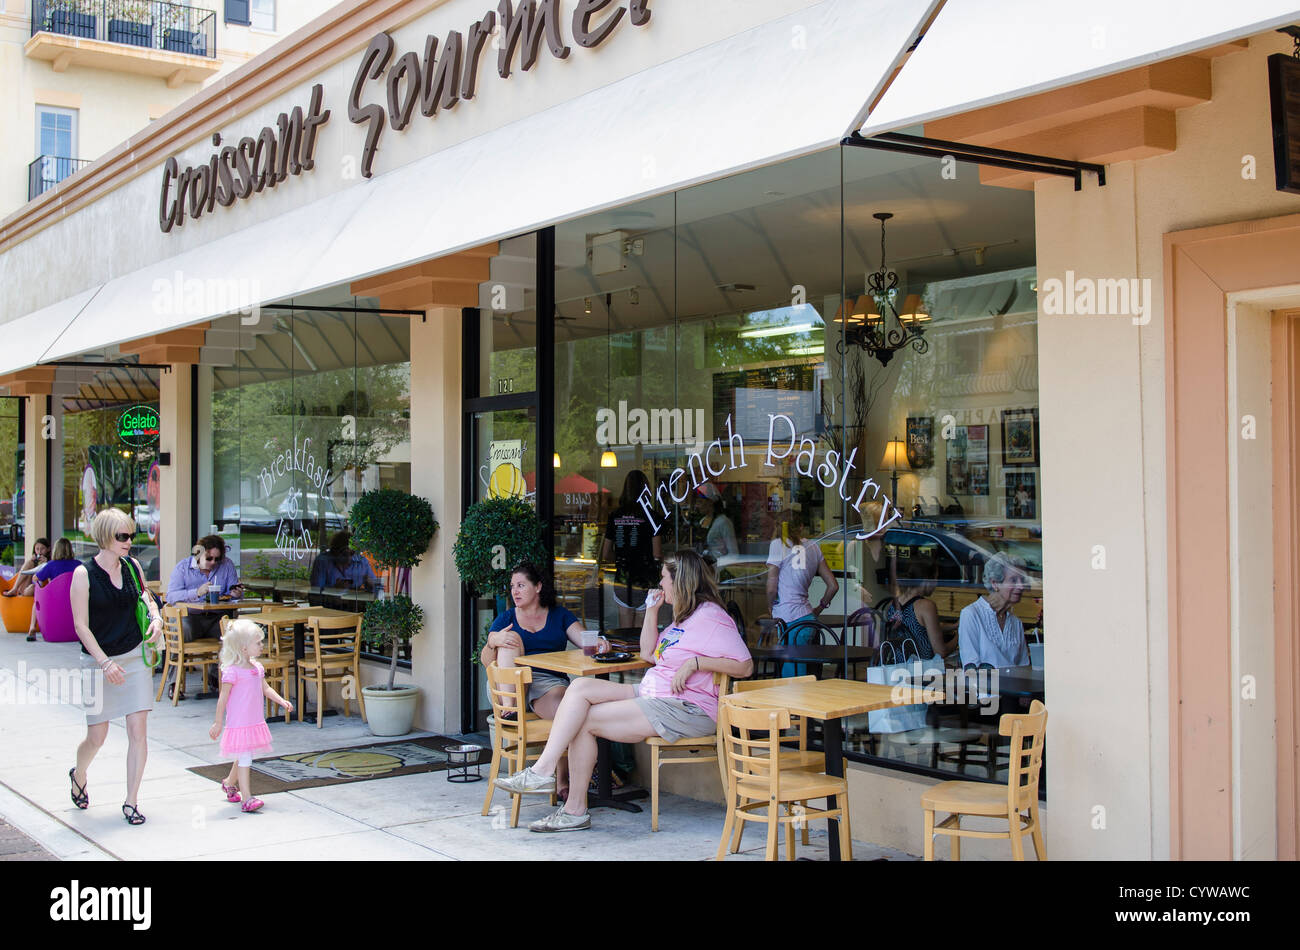 USA, Floride. Croissant boulangerie Gourmet trottoir outdoor cafe restaurant, Winter Park, Floride. Banque D'Images